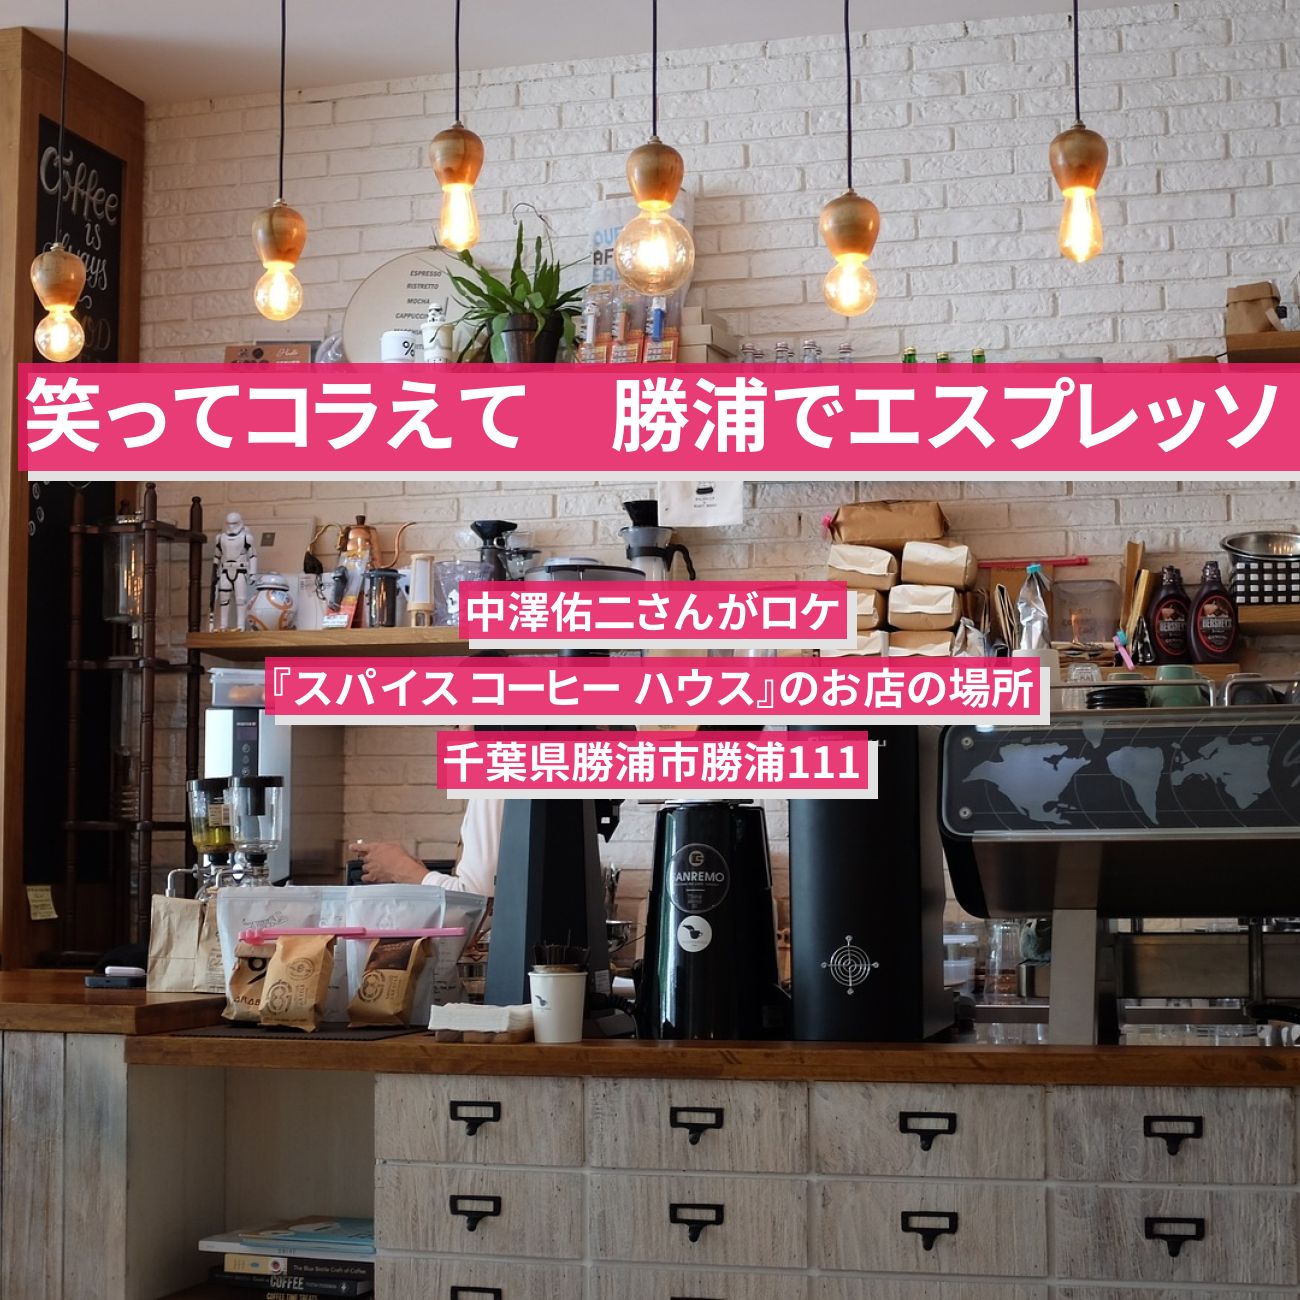 【笑ってコラえて】勝浦でエスプレッソ　中澤佑二『スパイス コーヒー ハウス』のお店の場所